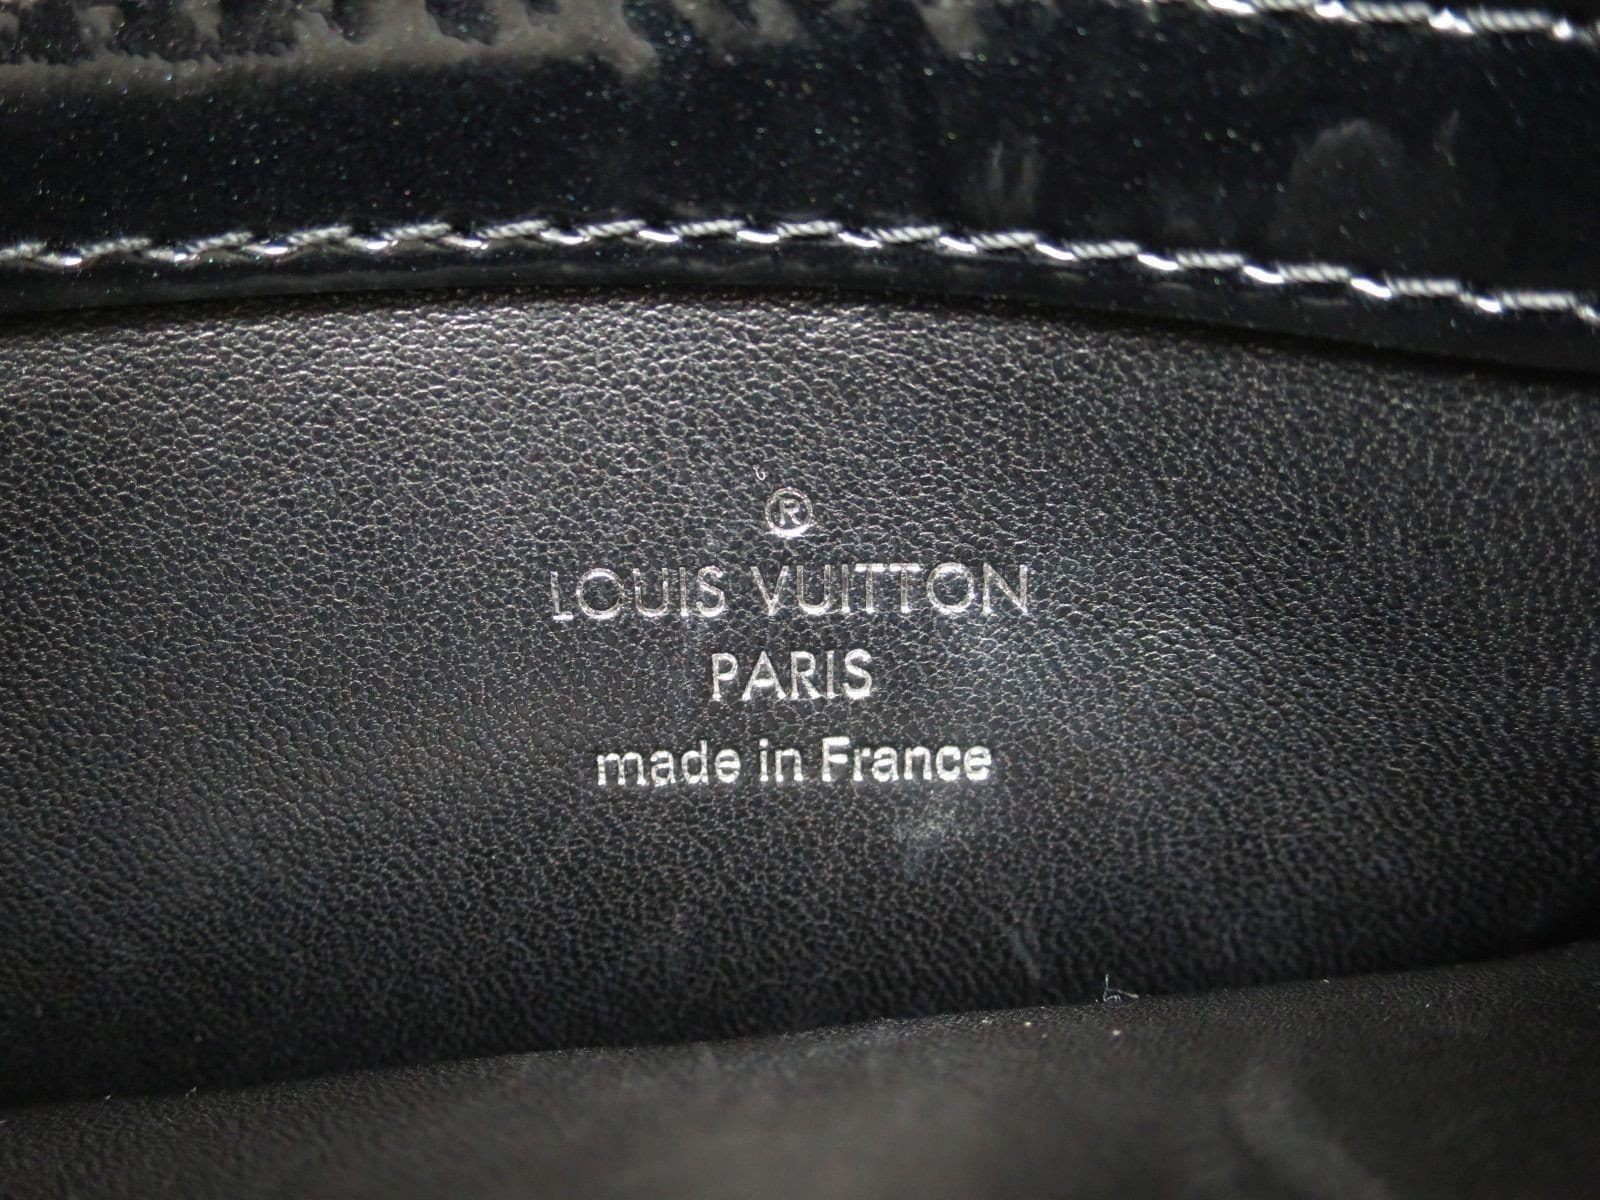 Louis Vuitton Black Lockit Cord Bracelet - The Purse Ladies